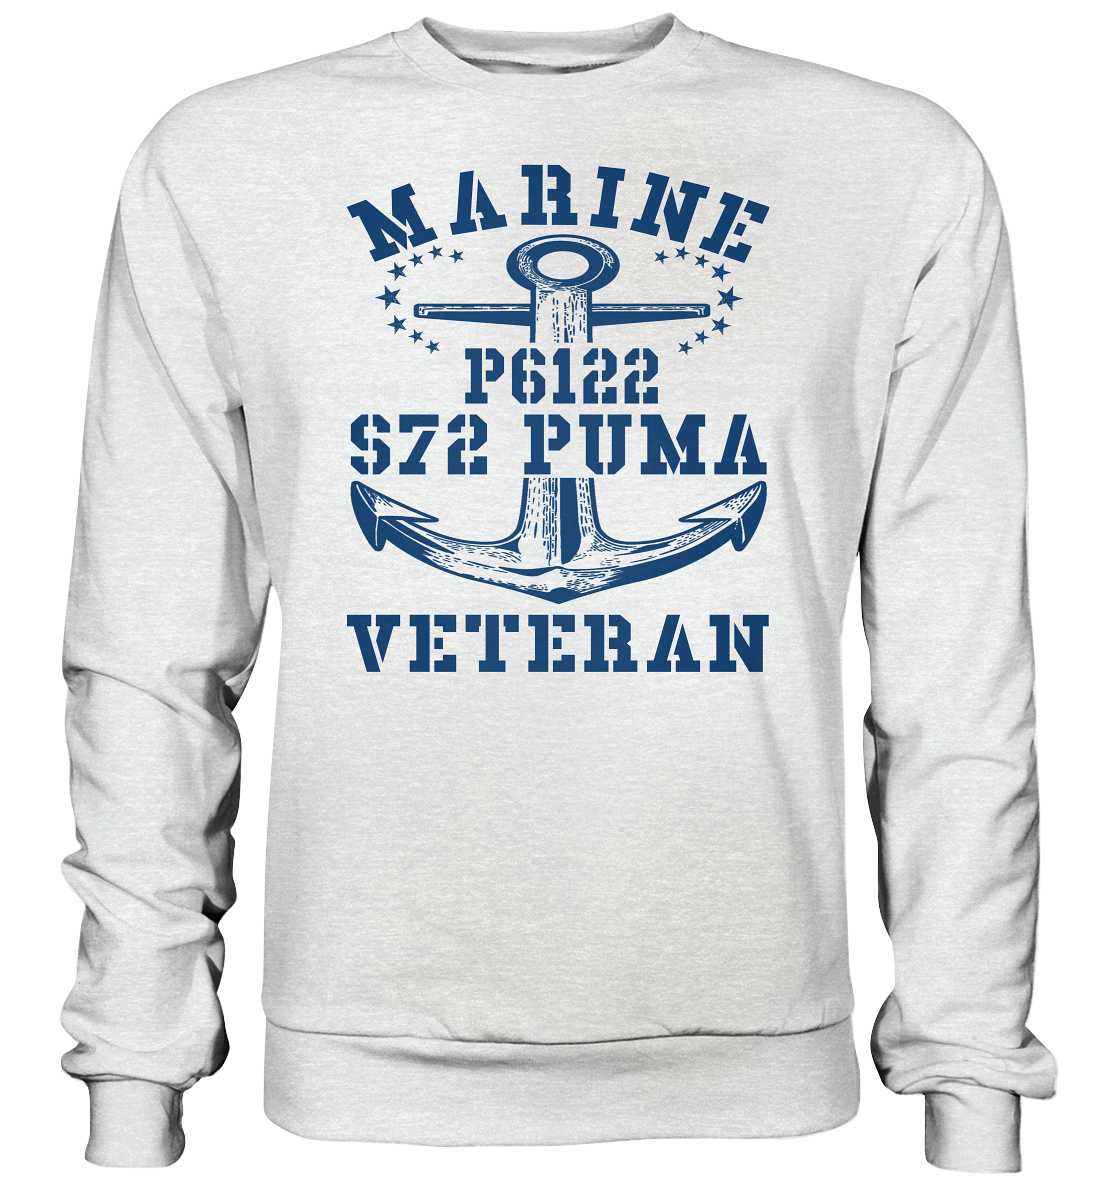 FK-Schnellboot P6122 P.U.M.A. Marine Veteran - Premium Sweatshirt